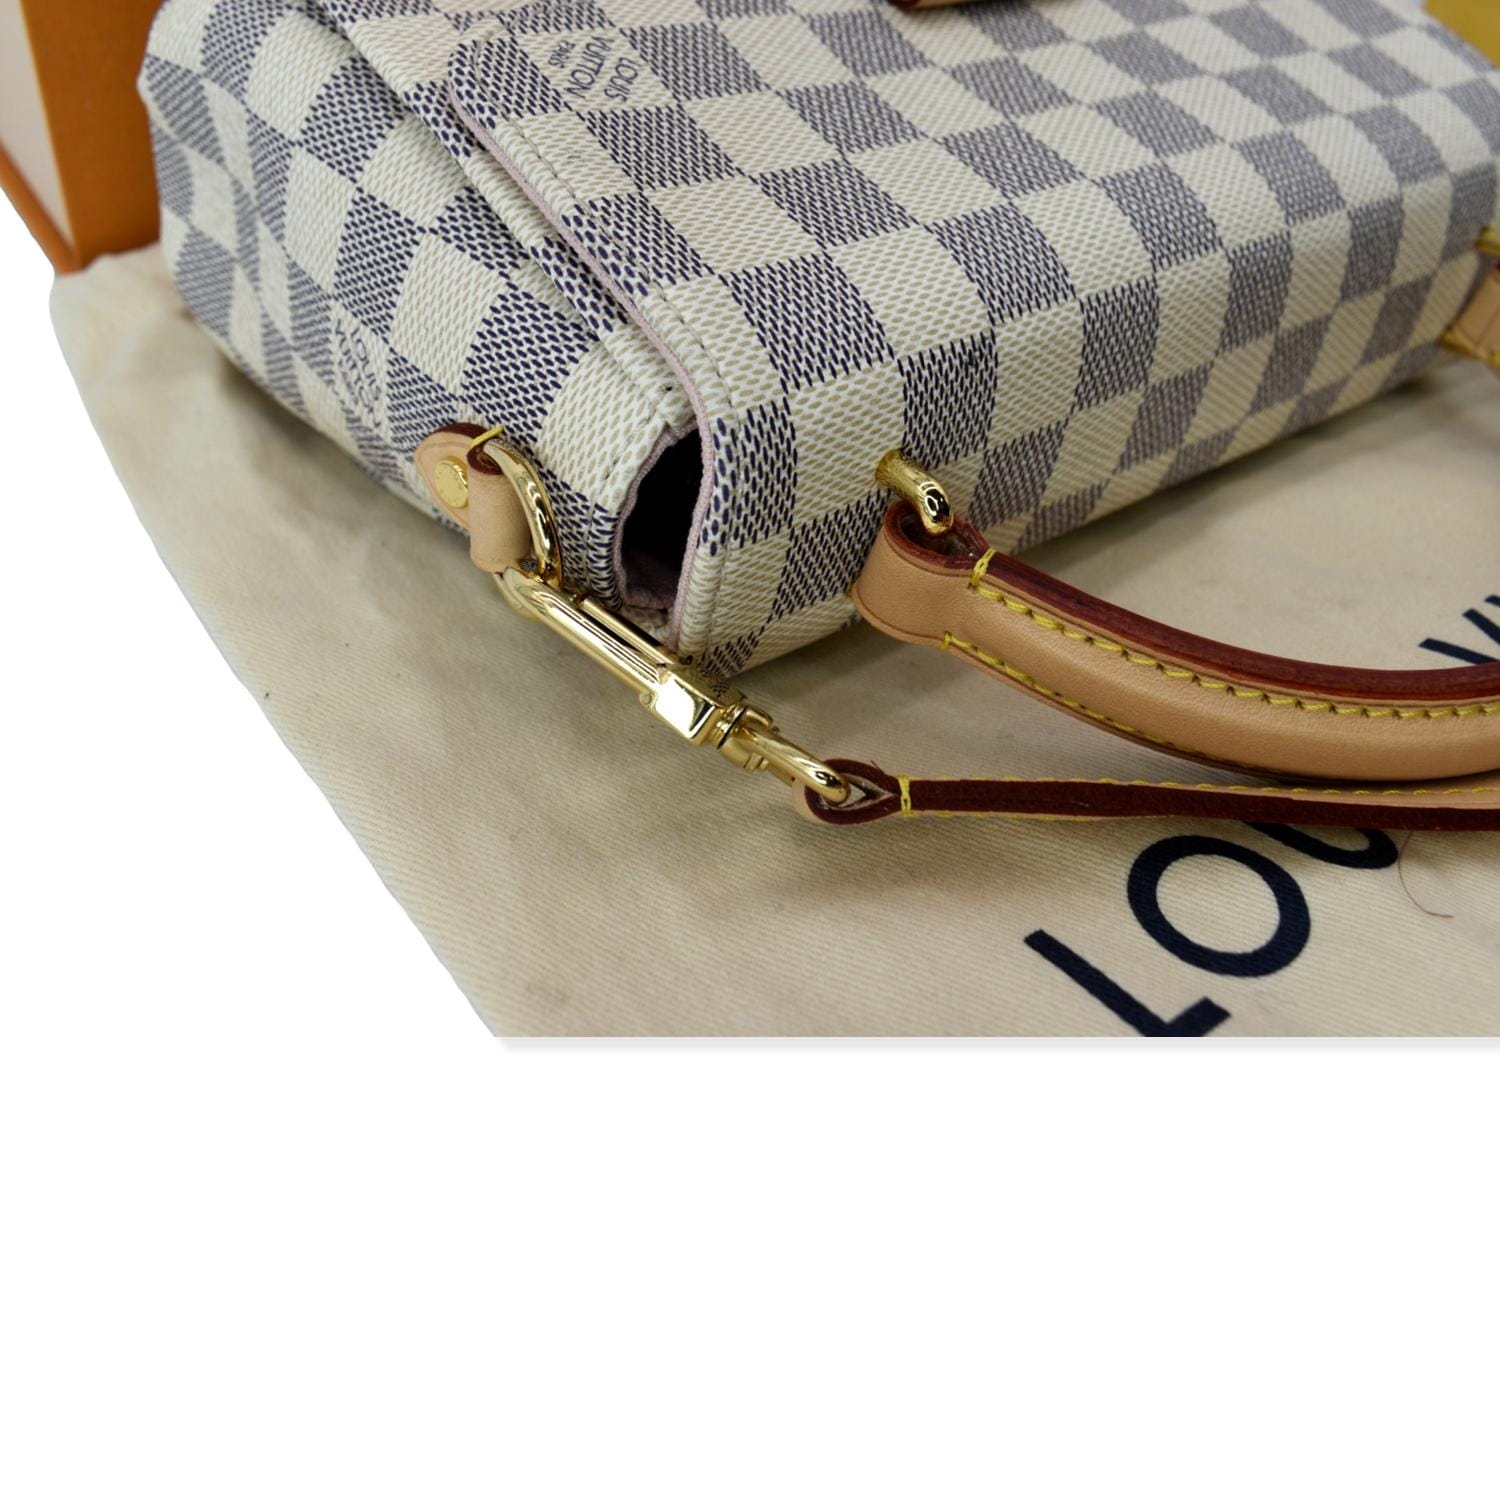 Louis-Vuitton-Damier-Azur-Croisette-2Way-Bag-Hand-Bag-N41581 – dct